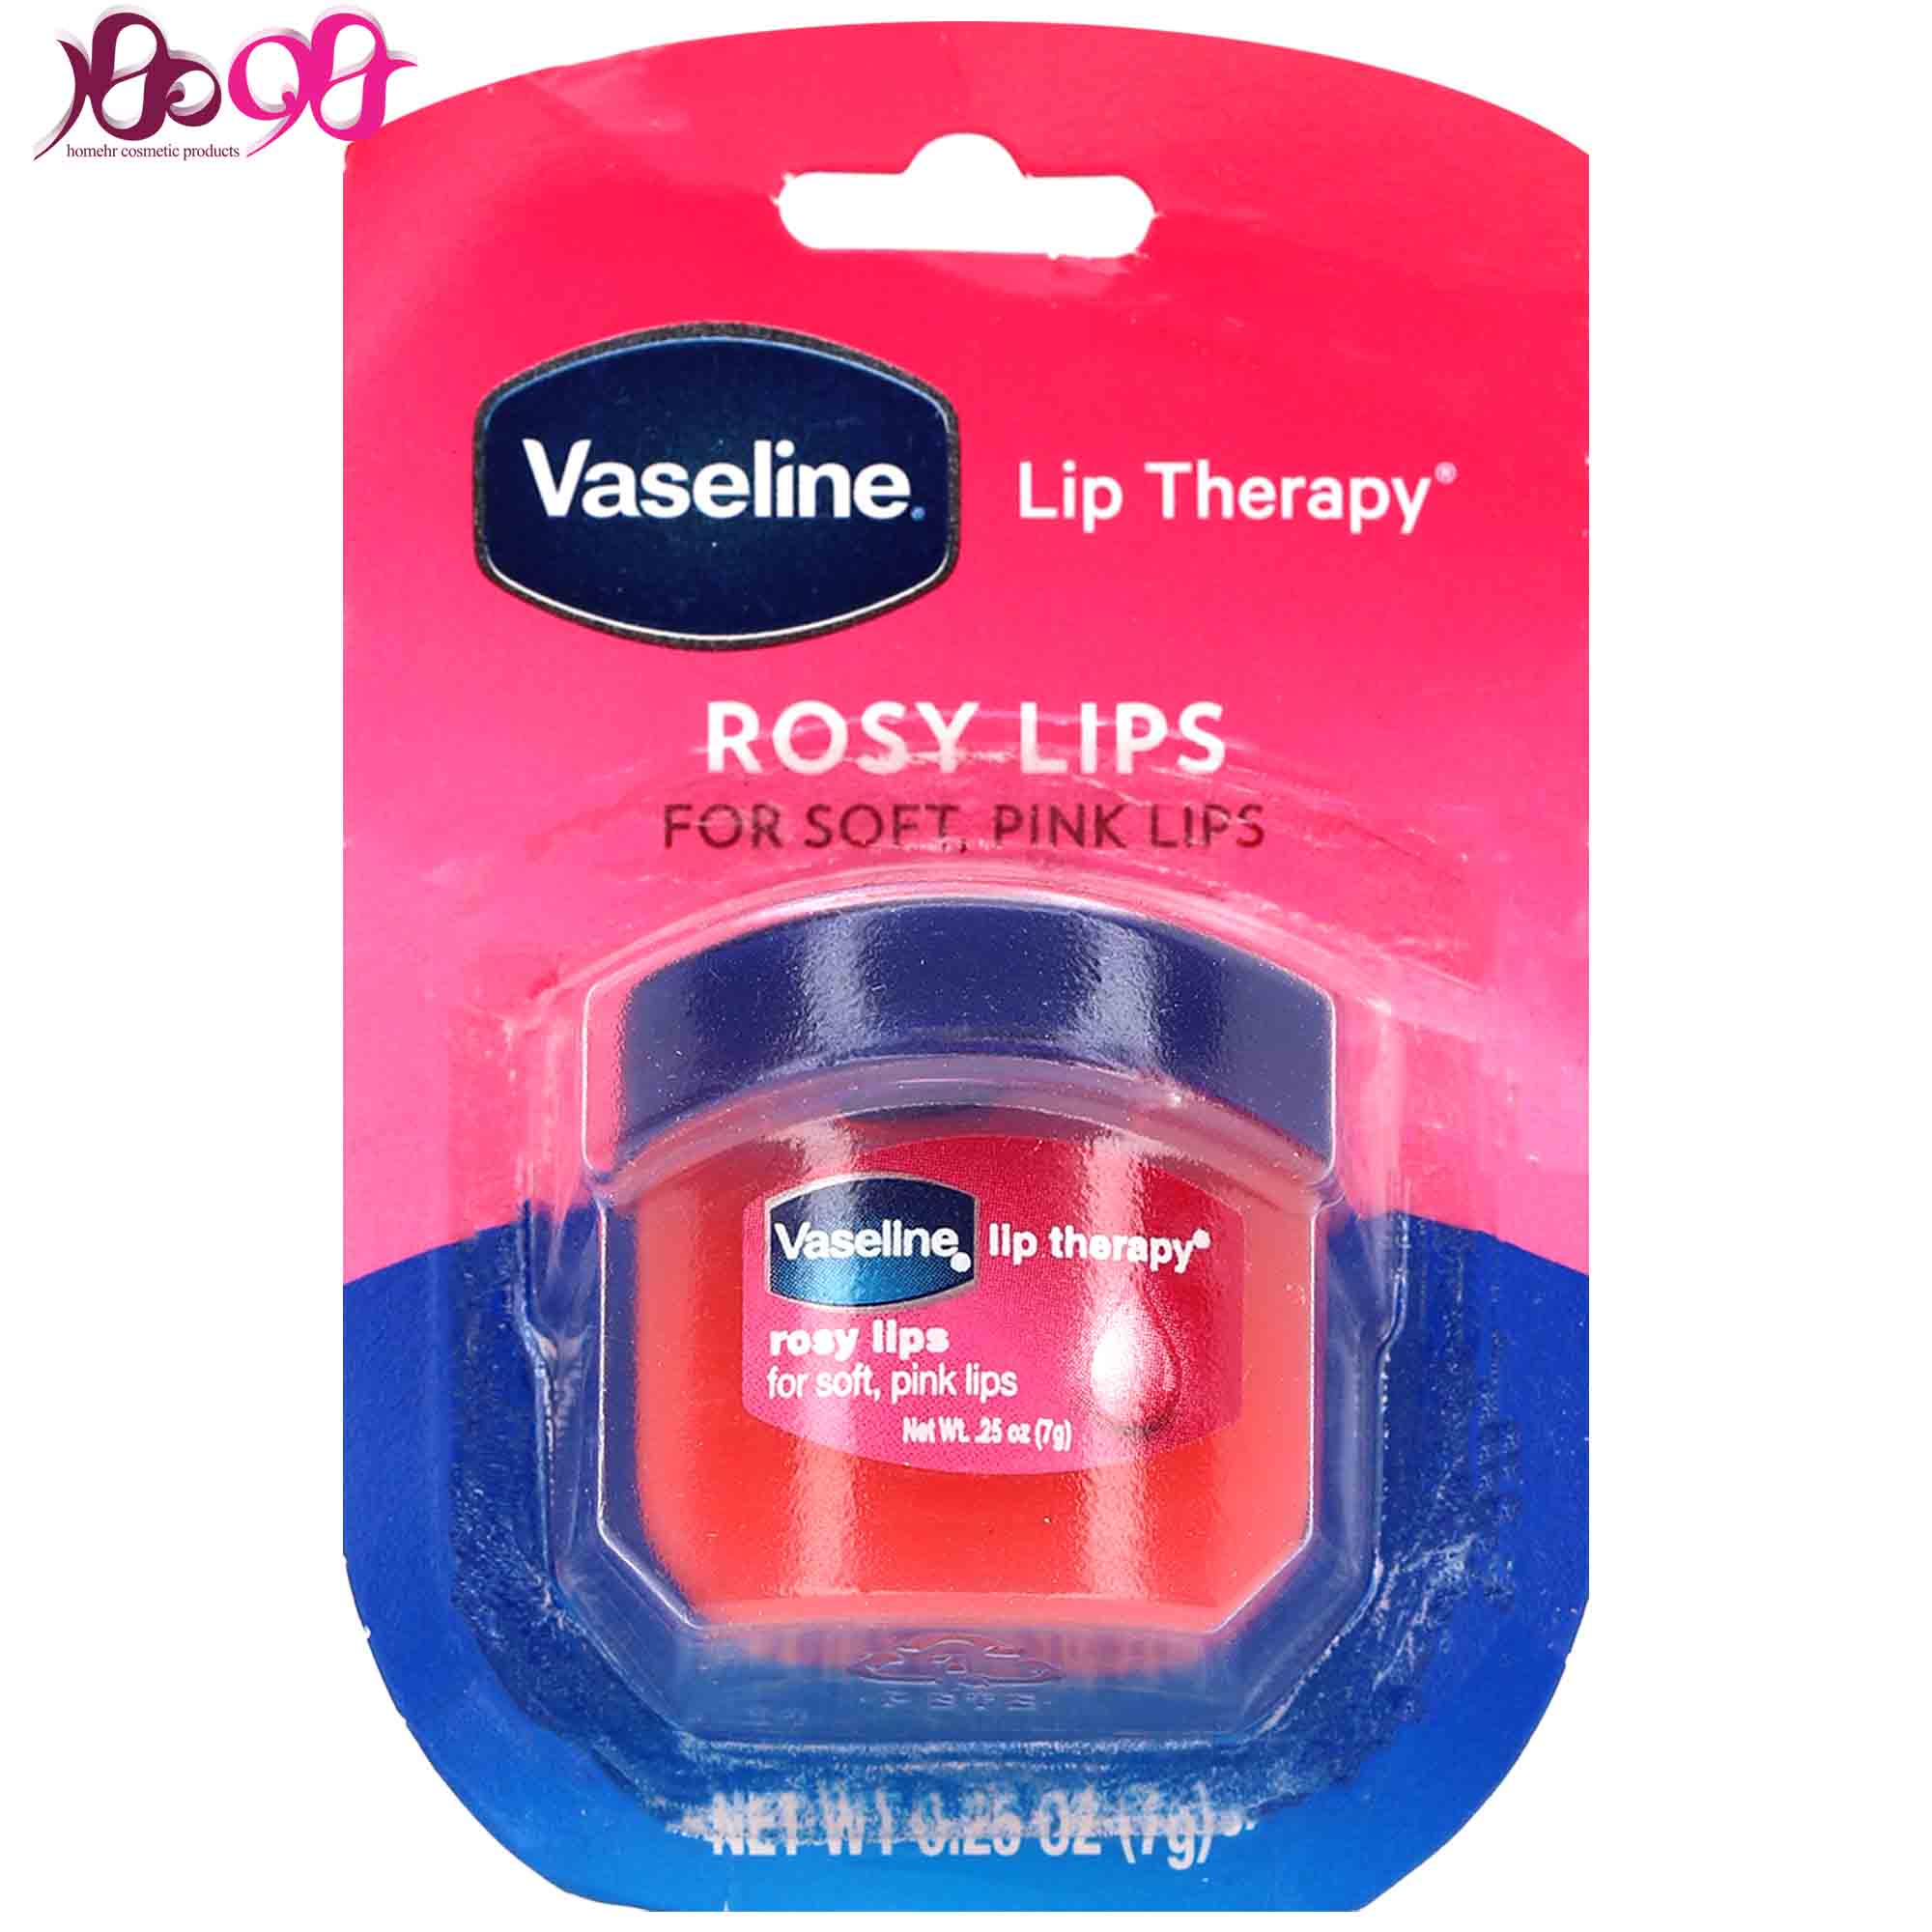 بالم-لب-کاسه-ای-مدل-rosy-lips-وازلین-vasline